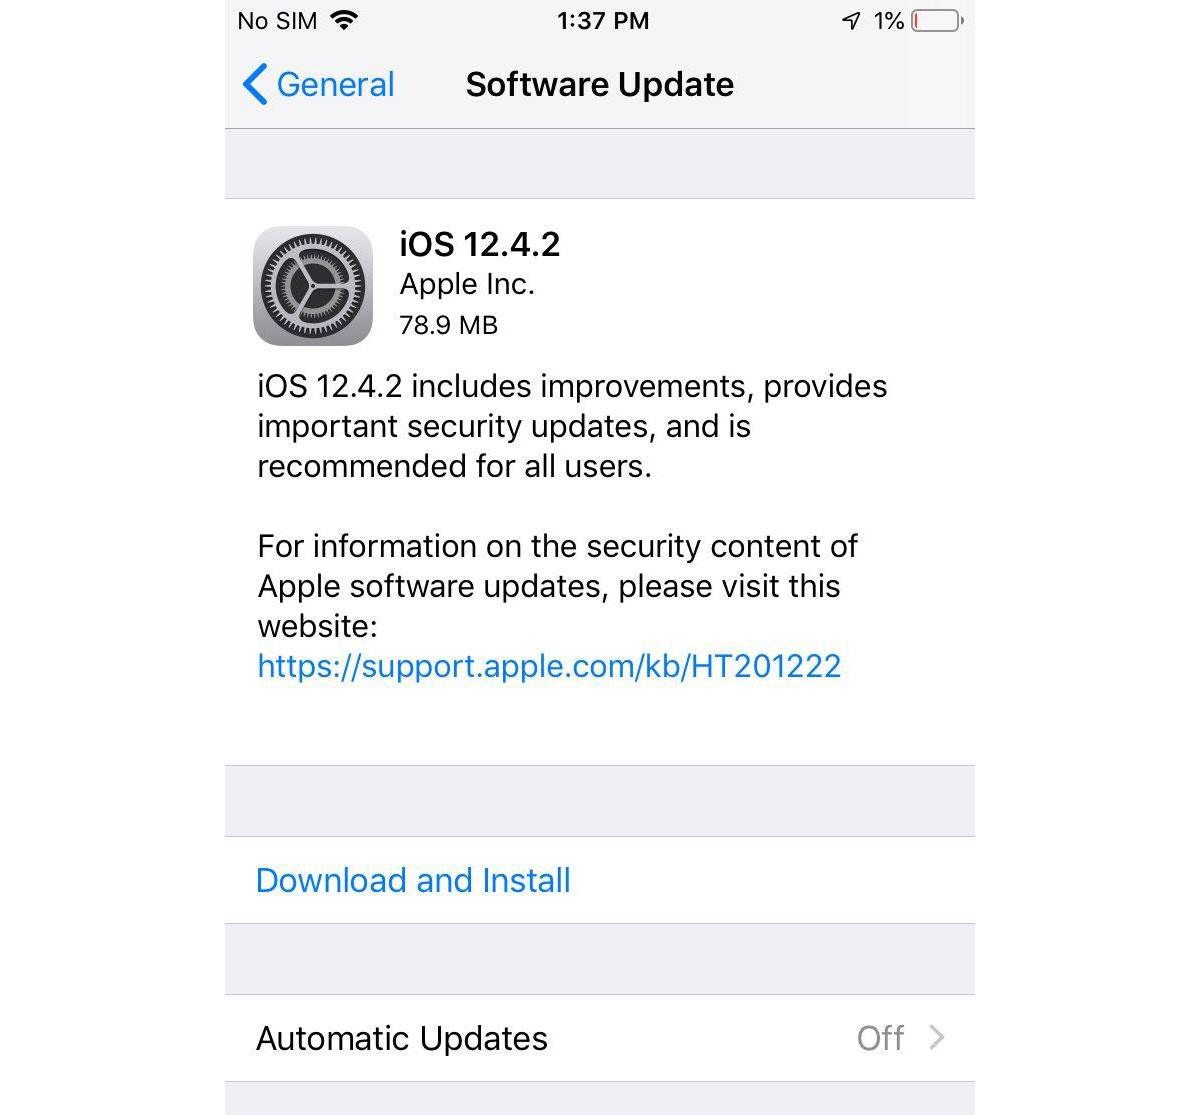 Apple phát hành phiên
bản iOS 12.4.2 cho các dòng máy iPhone, iPad không được hỗ
trợ lên iOS 13